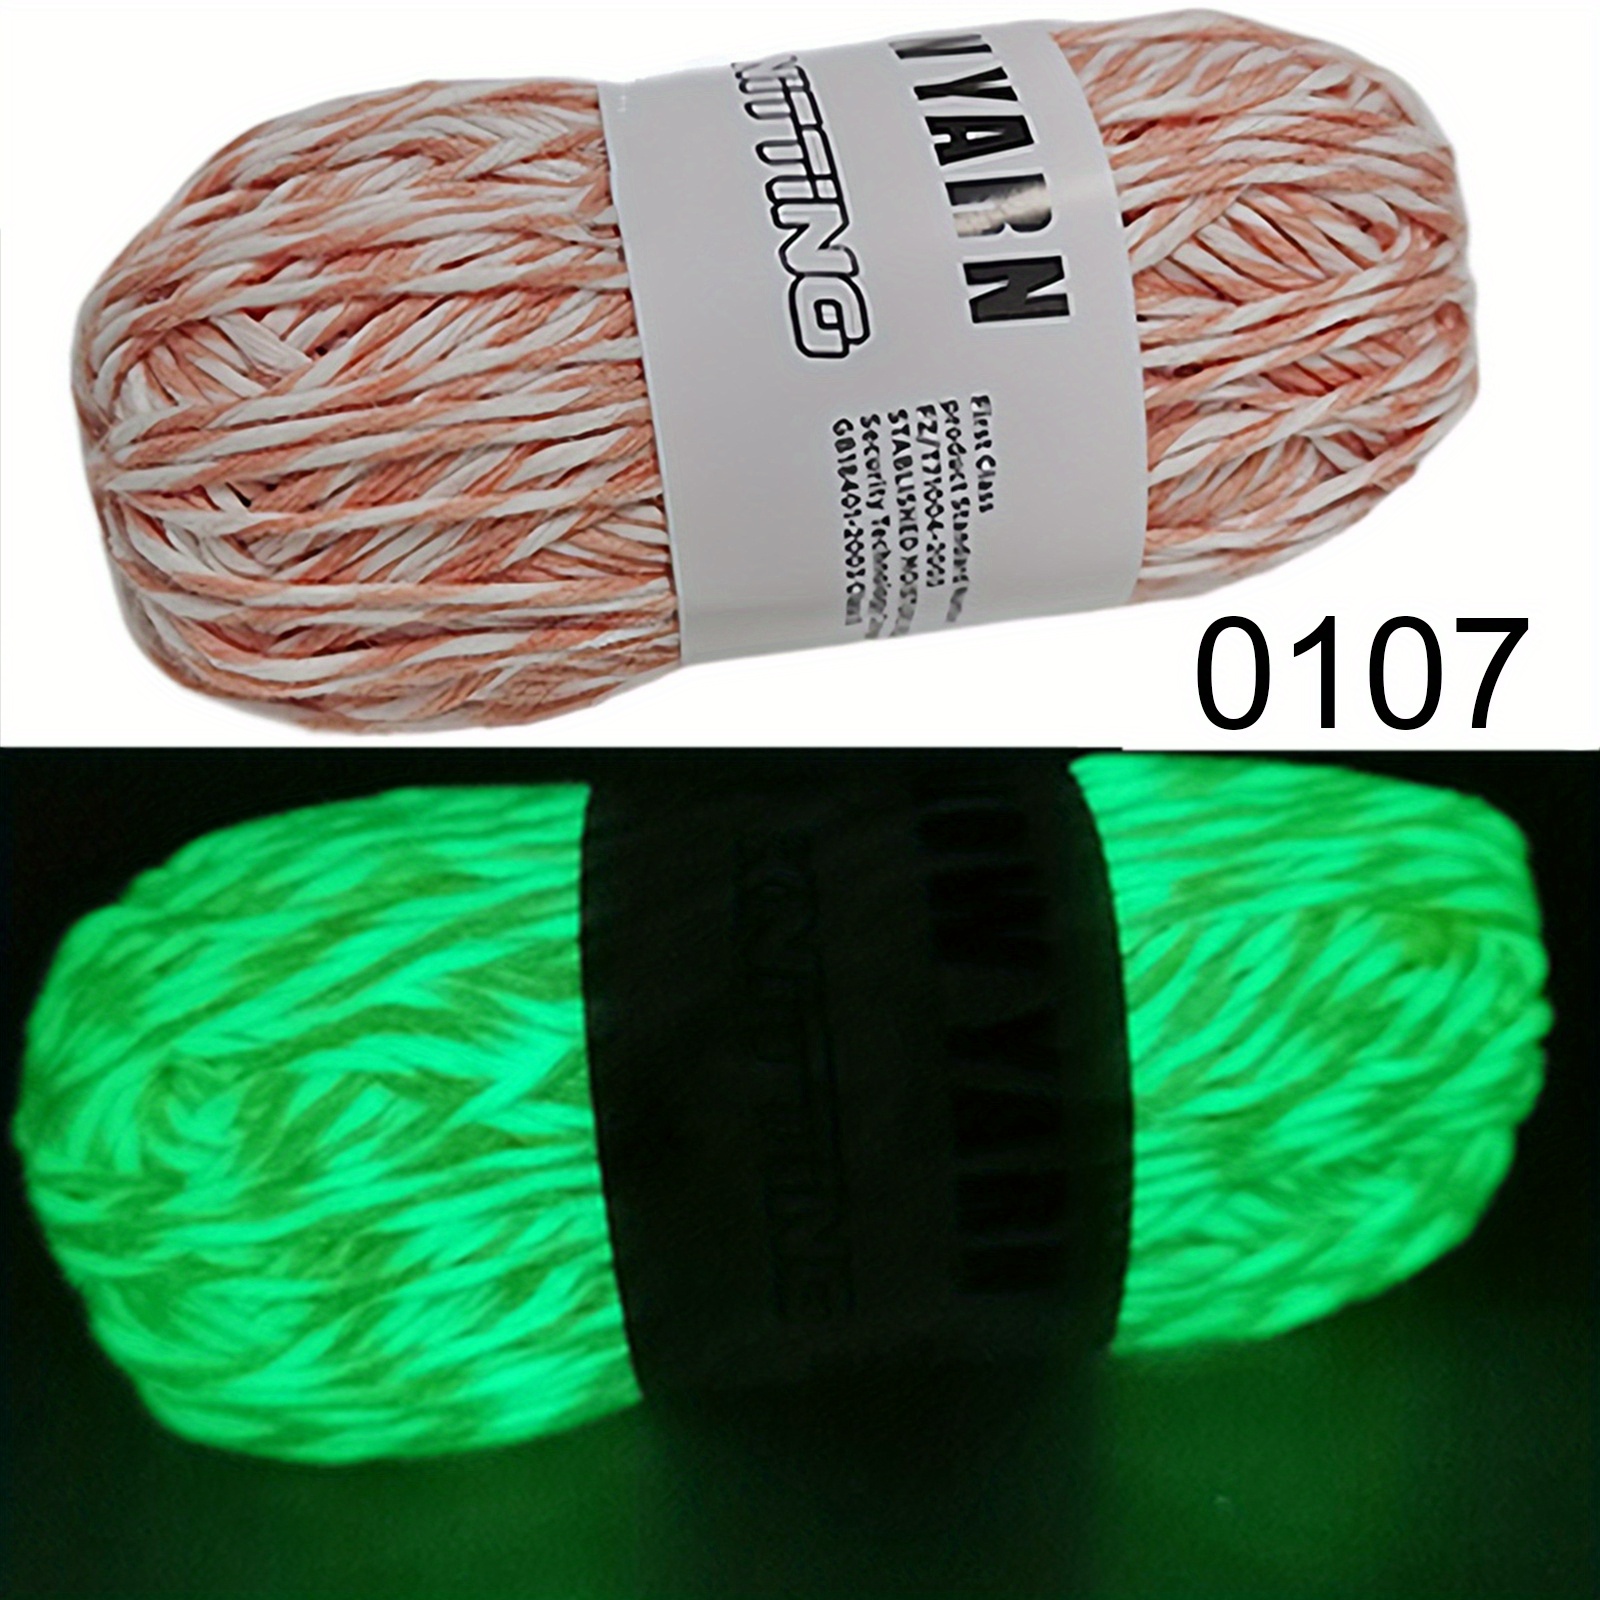 Glow in The Dark Yarn for Crocheting, Pink Yarn, Orange yarn, Glow Green  Yarn Thread, Knitting DIY Yarn 